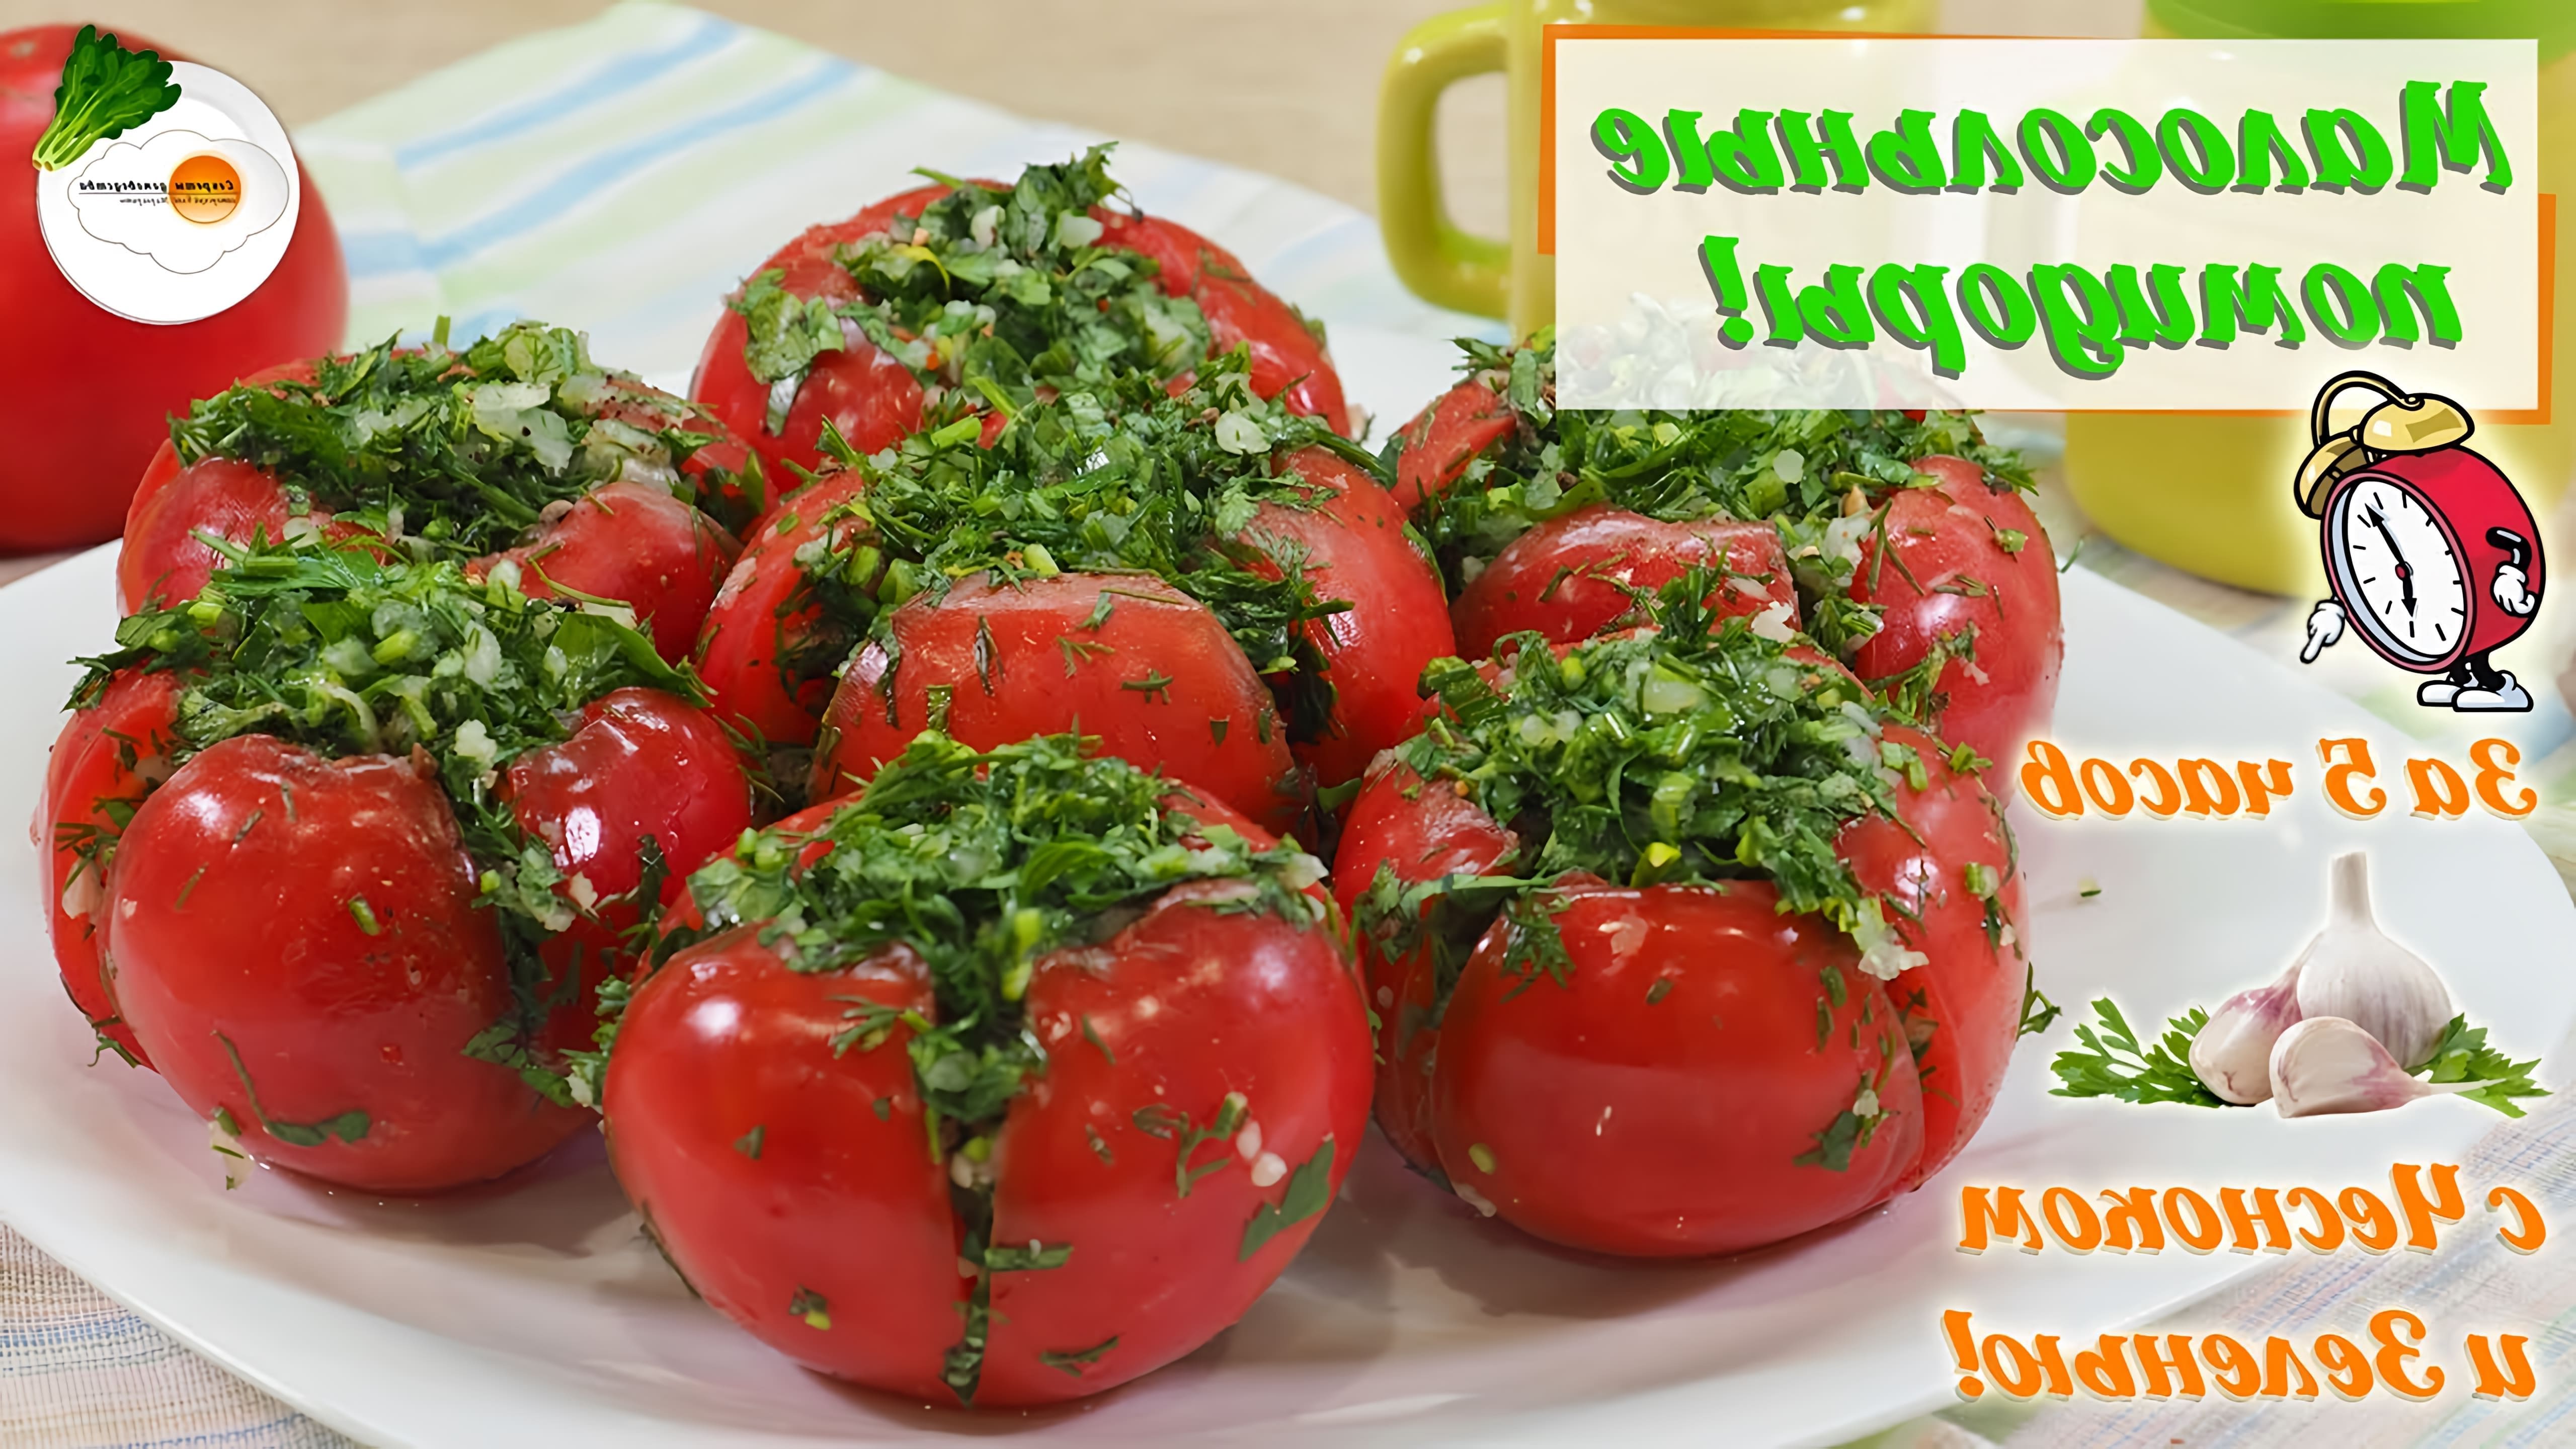 Малосольные помидоры готовлю с чесноком и зеленью по рецепту быстрого приготовления (Quick Salted Tomatoes). 